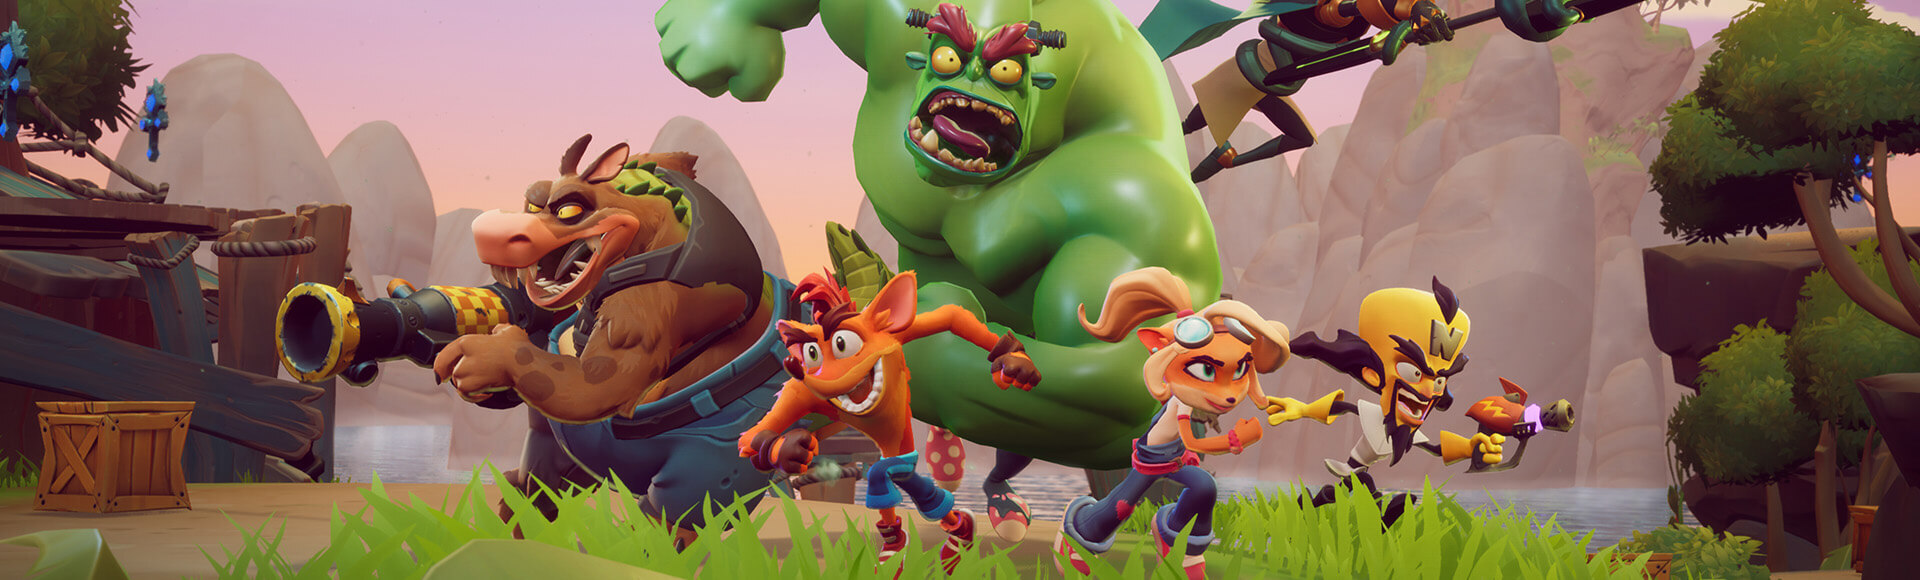 Crash Team Rumble: Trailer revela novos personagens jogáveis e batalha 4v4  - Combo Infinito